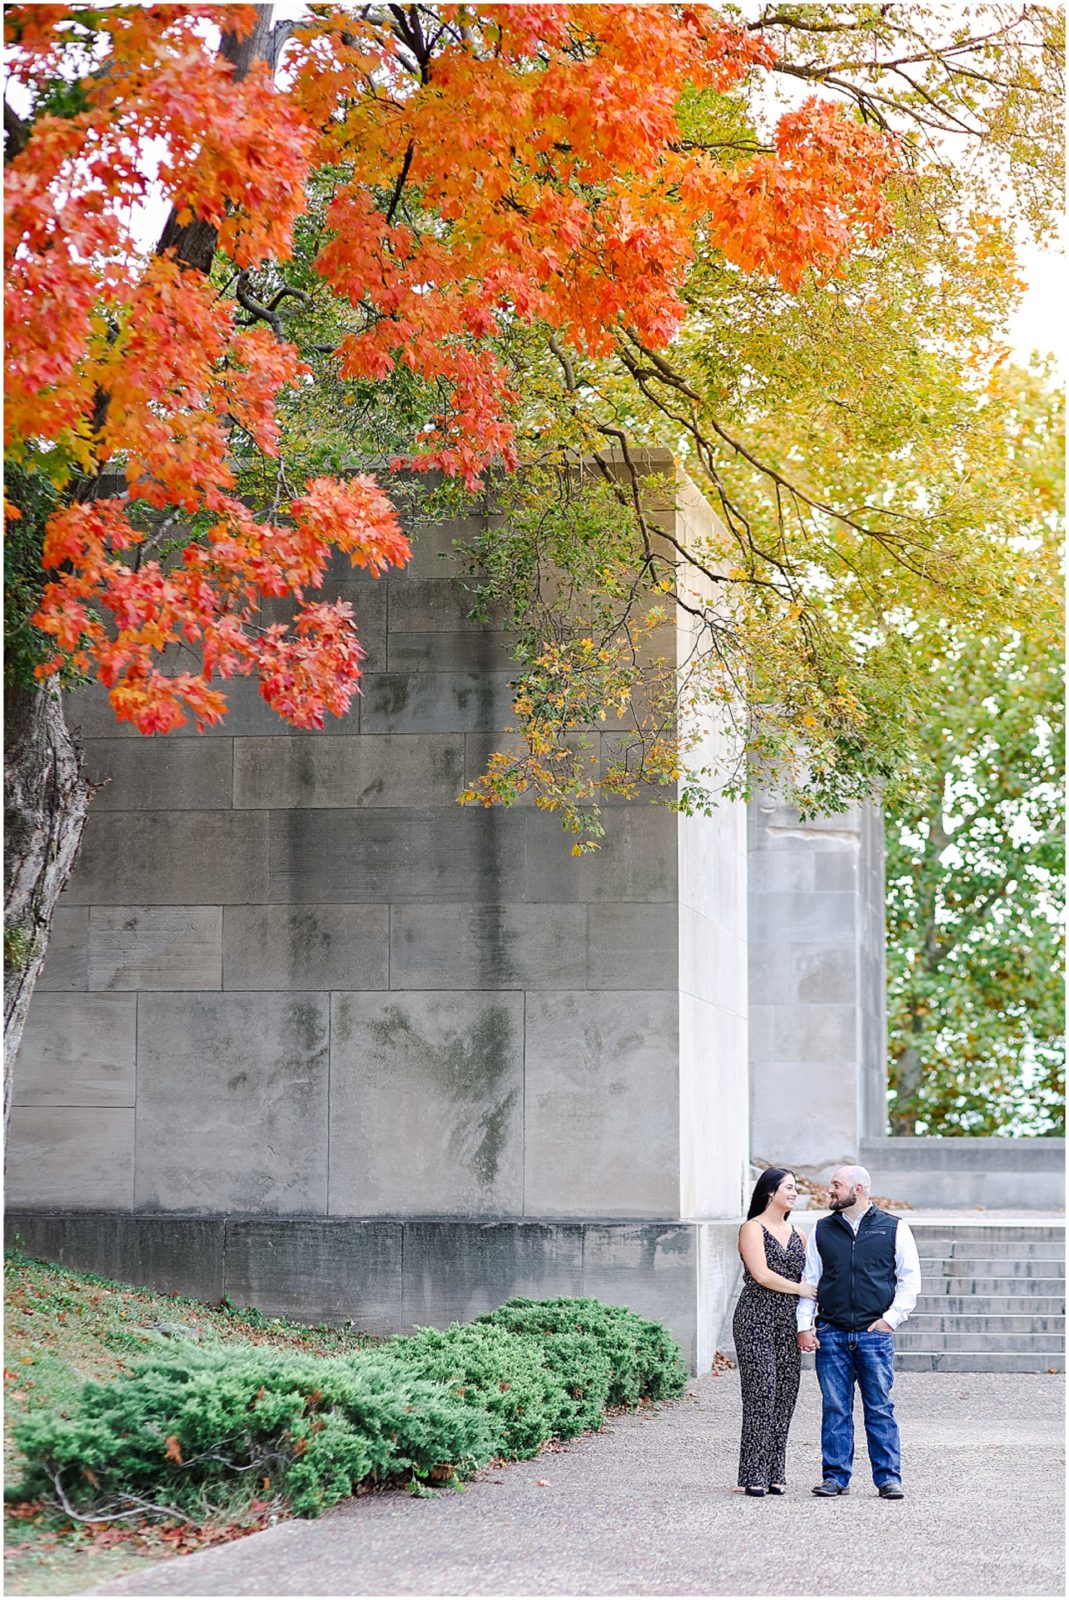 Kansas City Engagement Photos at Liberty Memorial - Fall Photos 